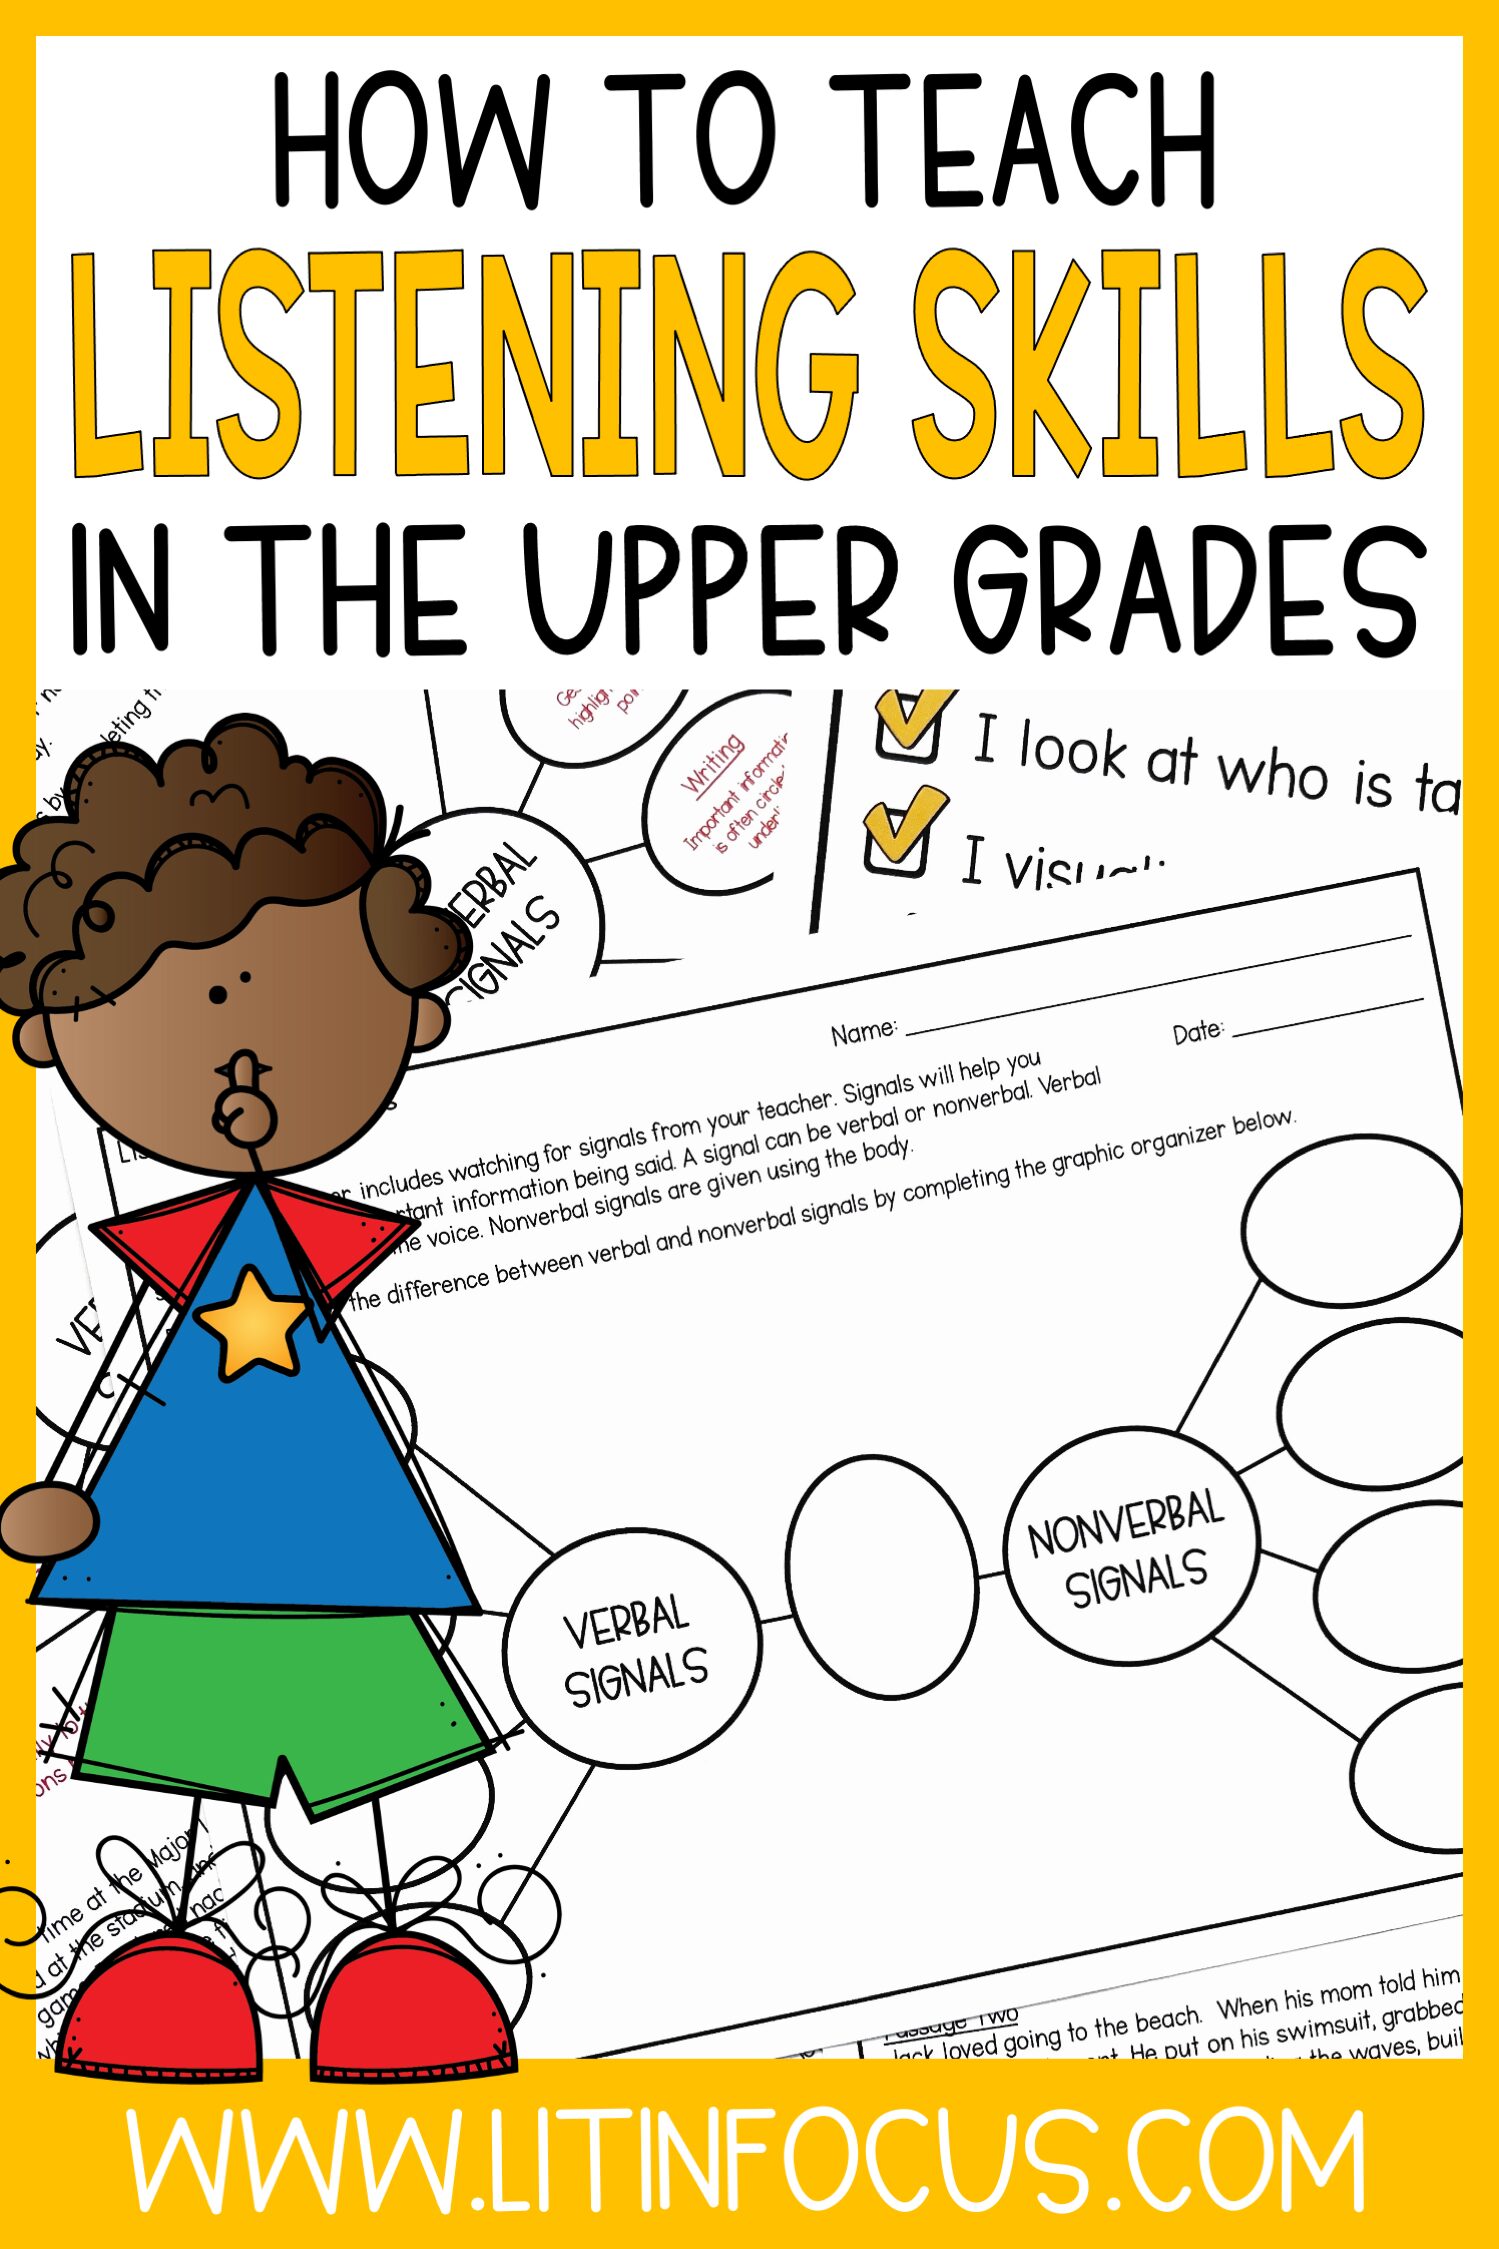 Teaching Listening Skills in the Upper Grades